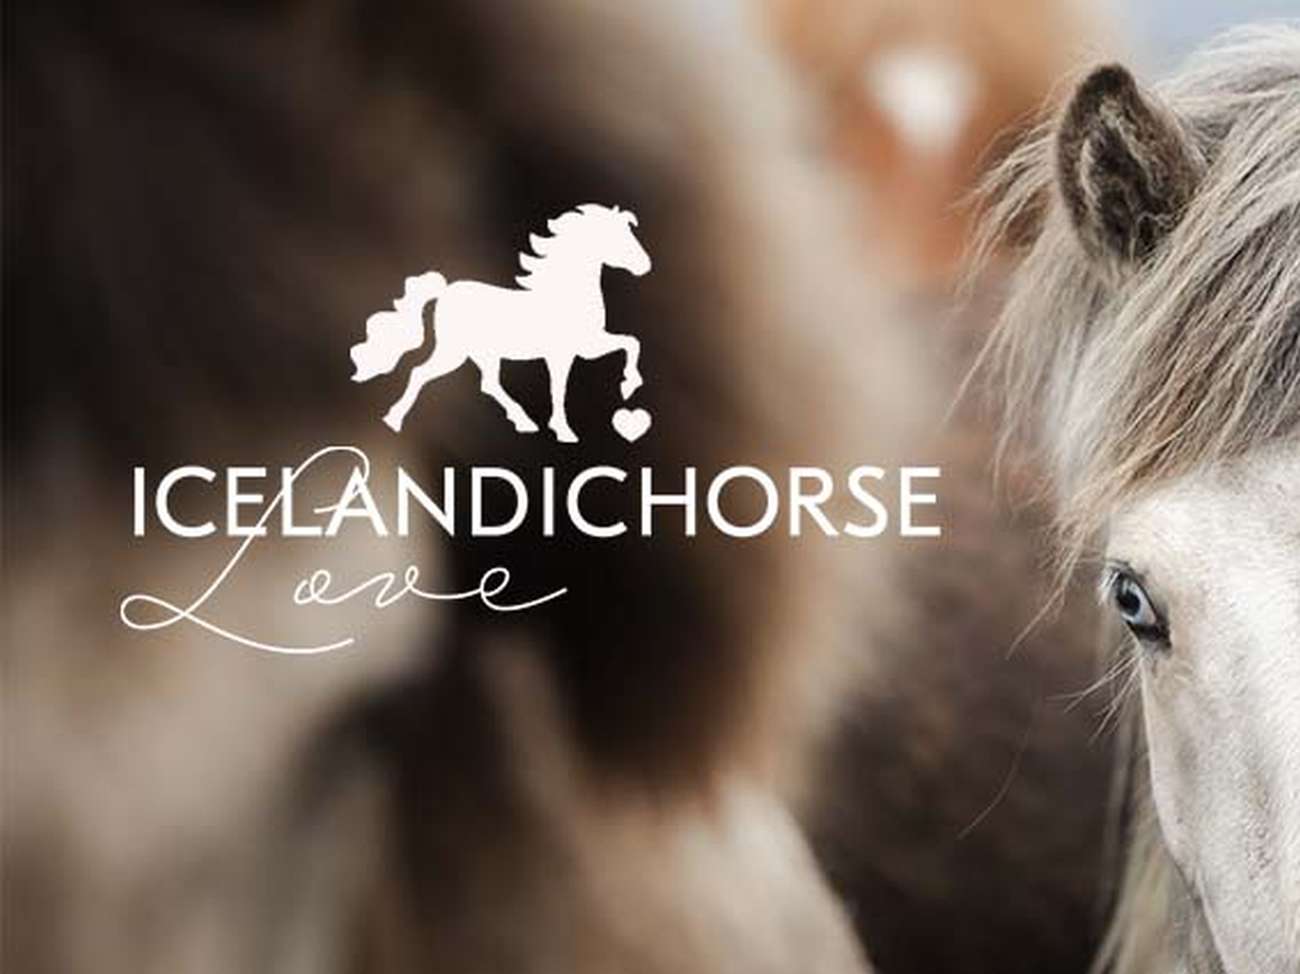 Islandpferdeliebe Onlineshop - Schönes für Islandpferdefans